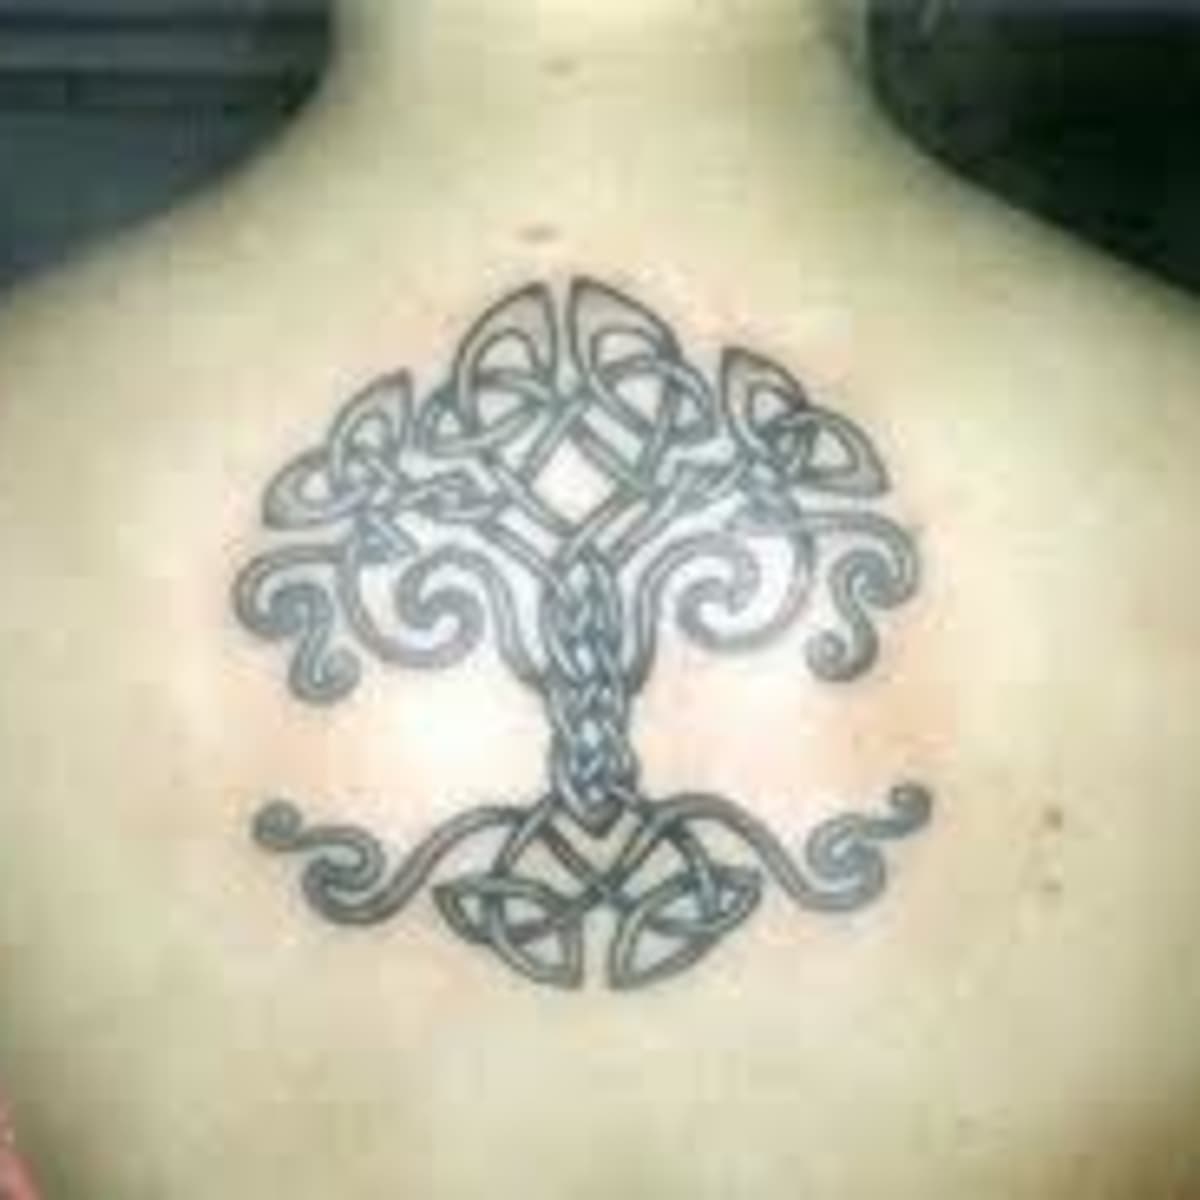 60 Elegant Celtic Tattoos On Arm